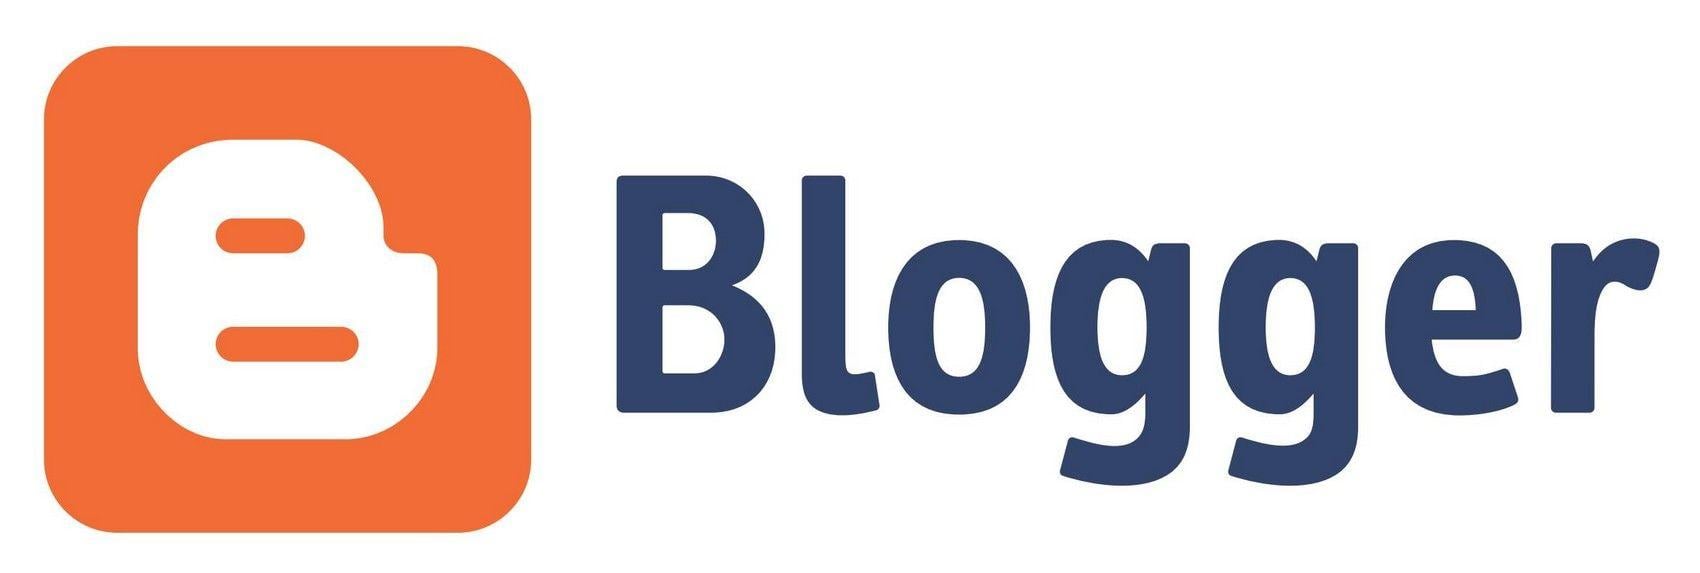 Blog.com Logo - Blogger.com Logo [EPS File] - Brand Emblems, Company Logo Downloads